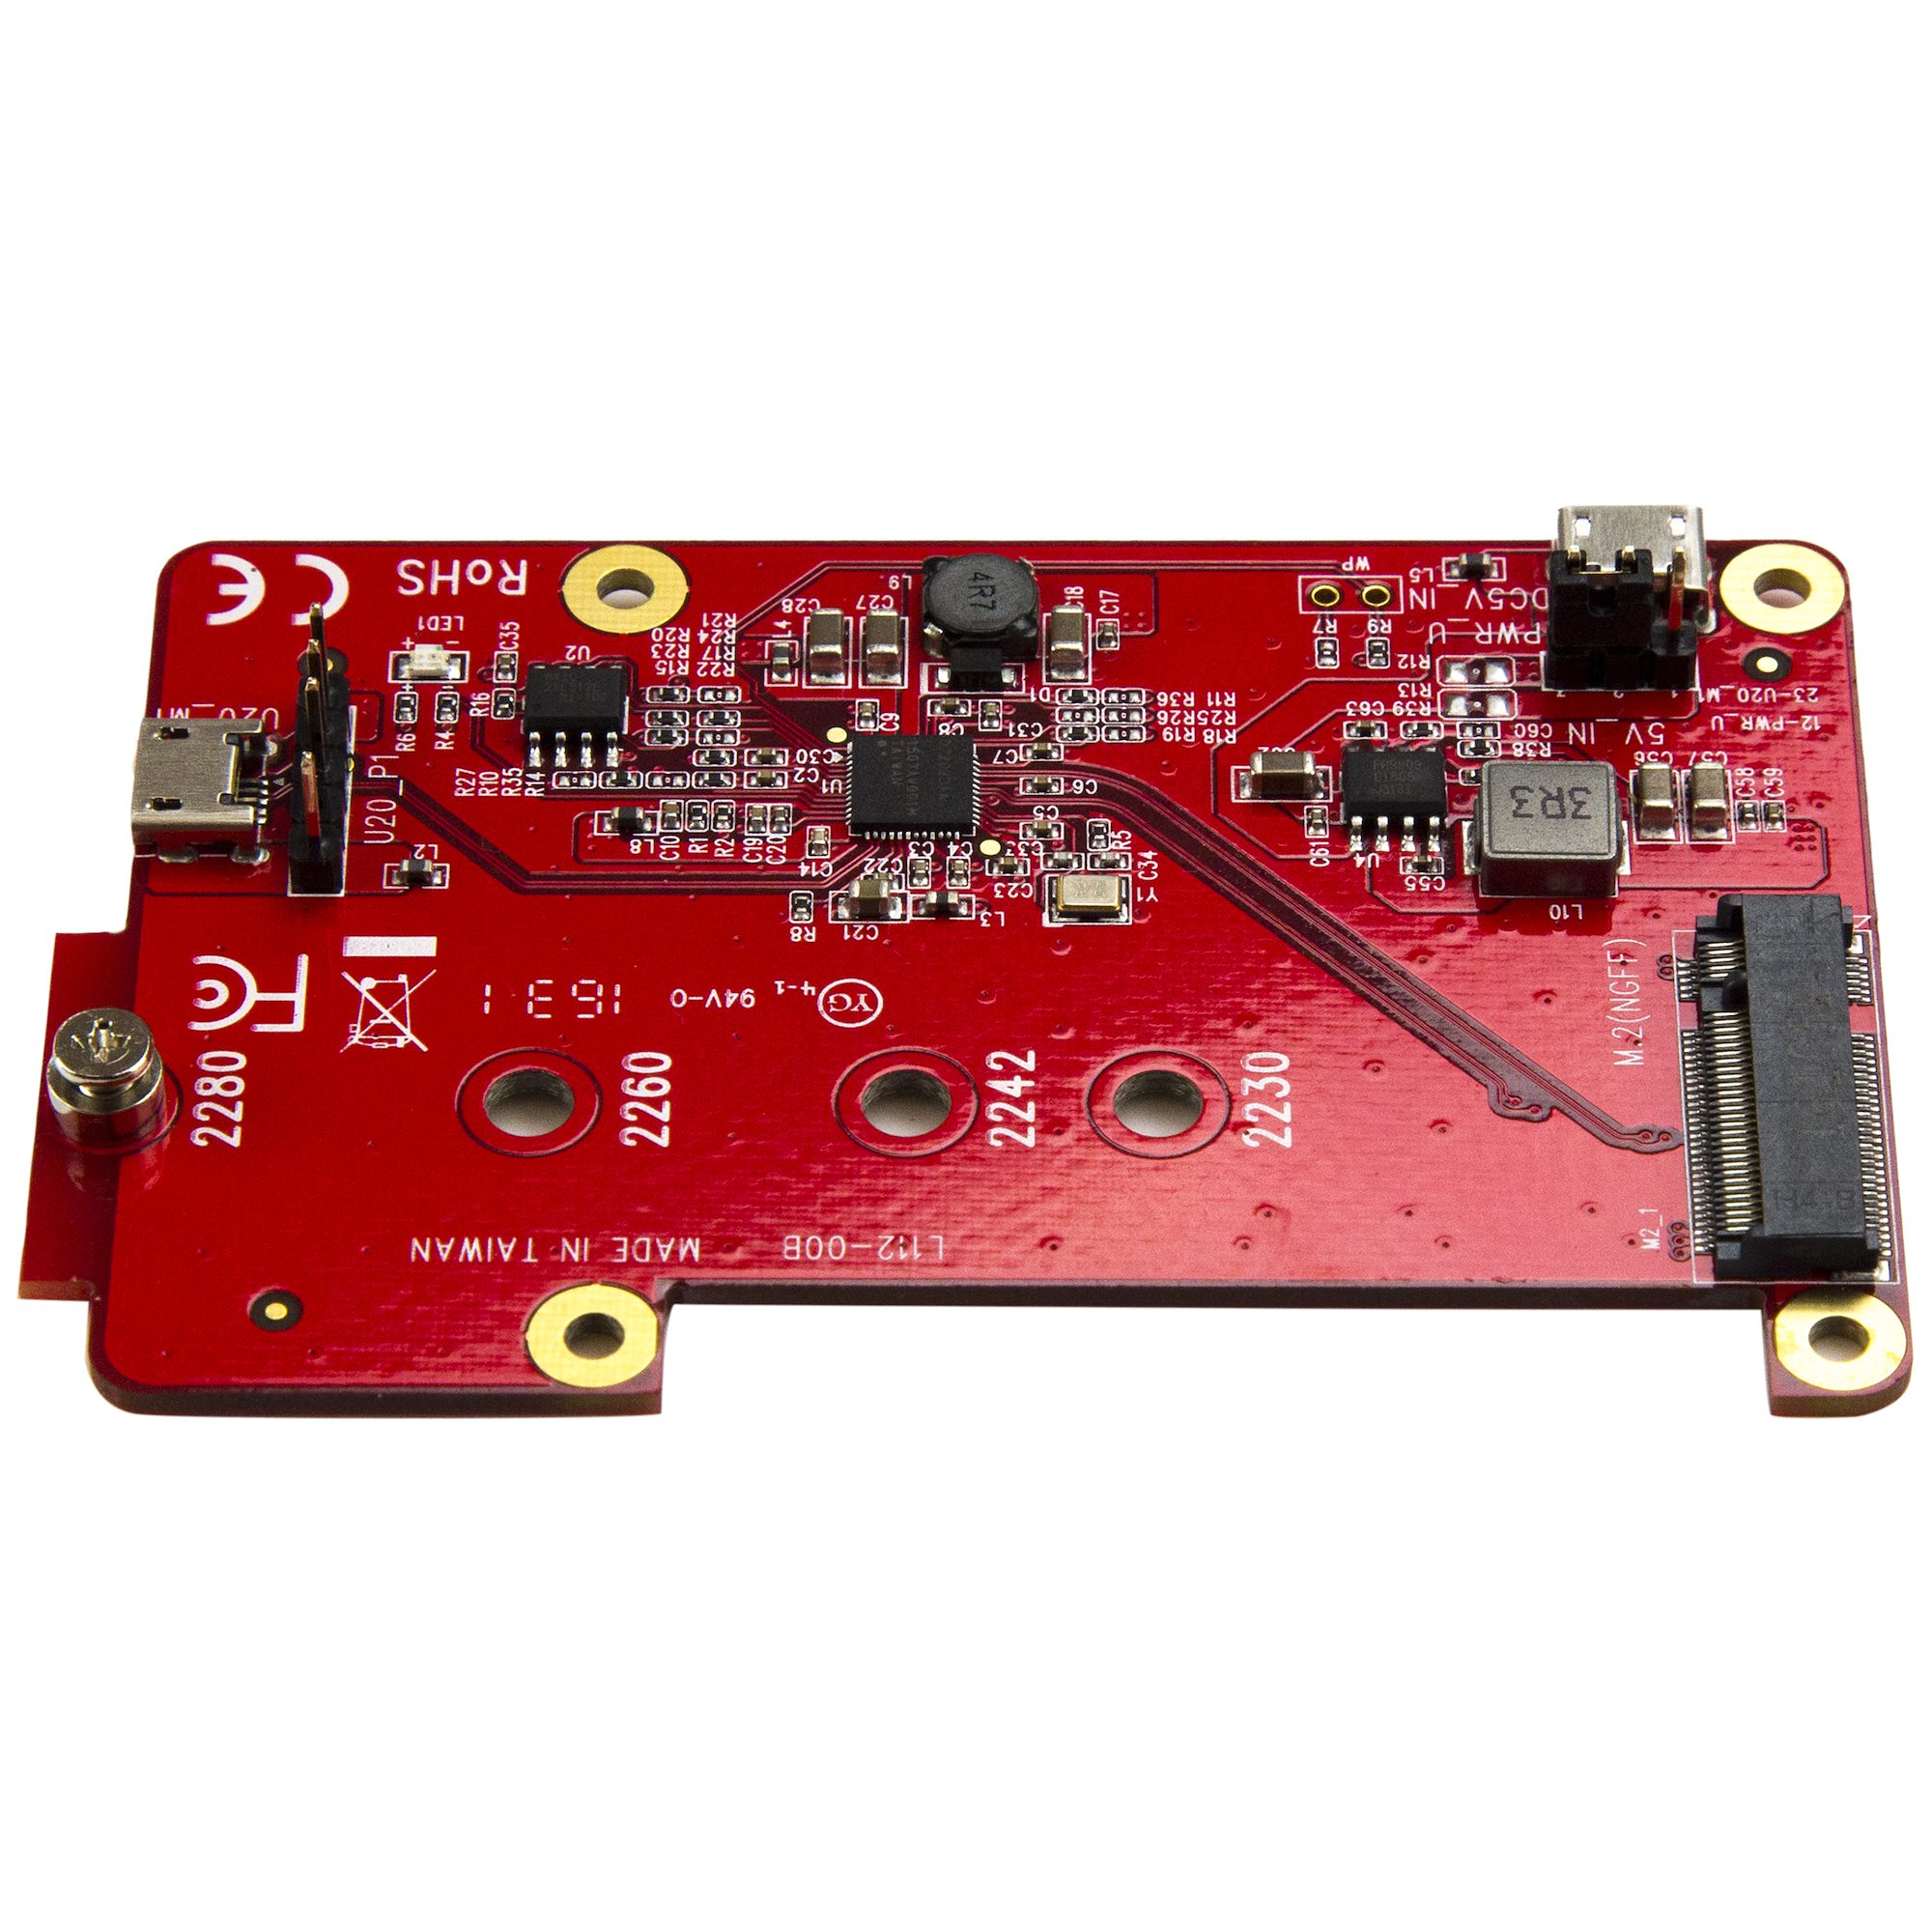 Raspberry Pi用USB M.2 SATA変換基板 電子工作ボード ドライブ アダプタ  コンバータ  日本